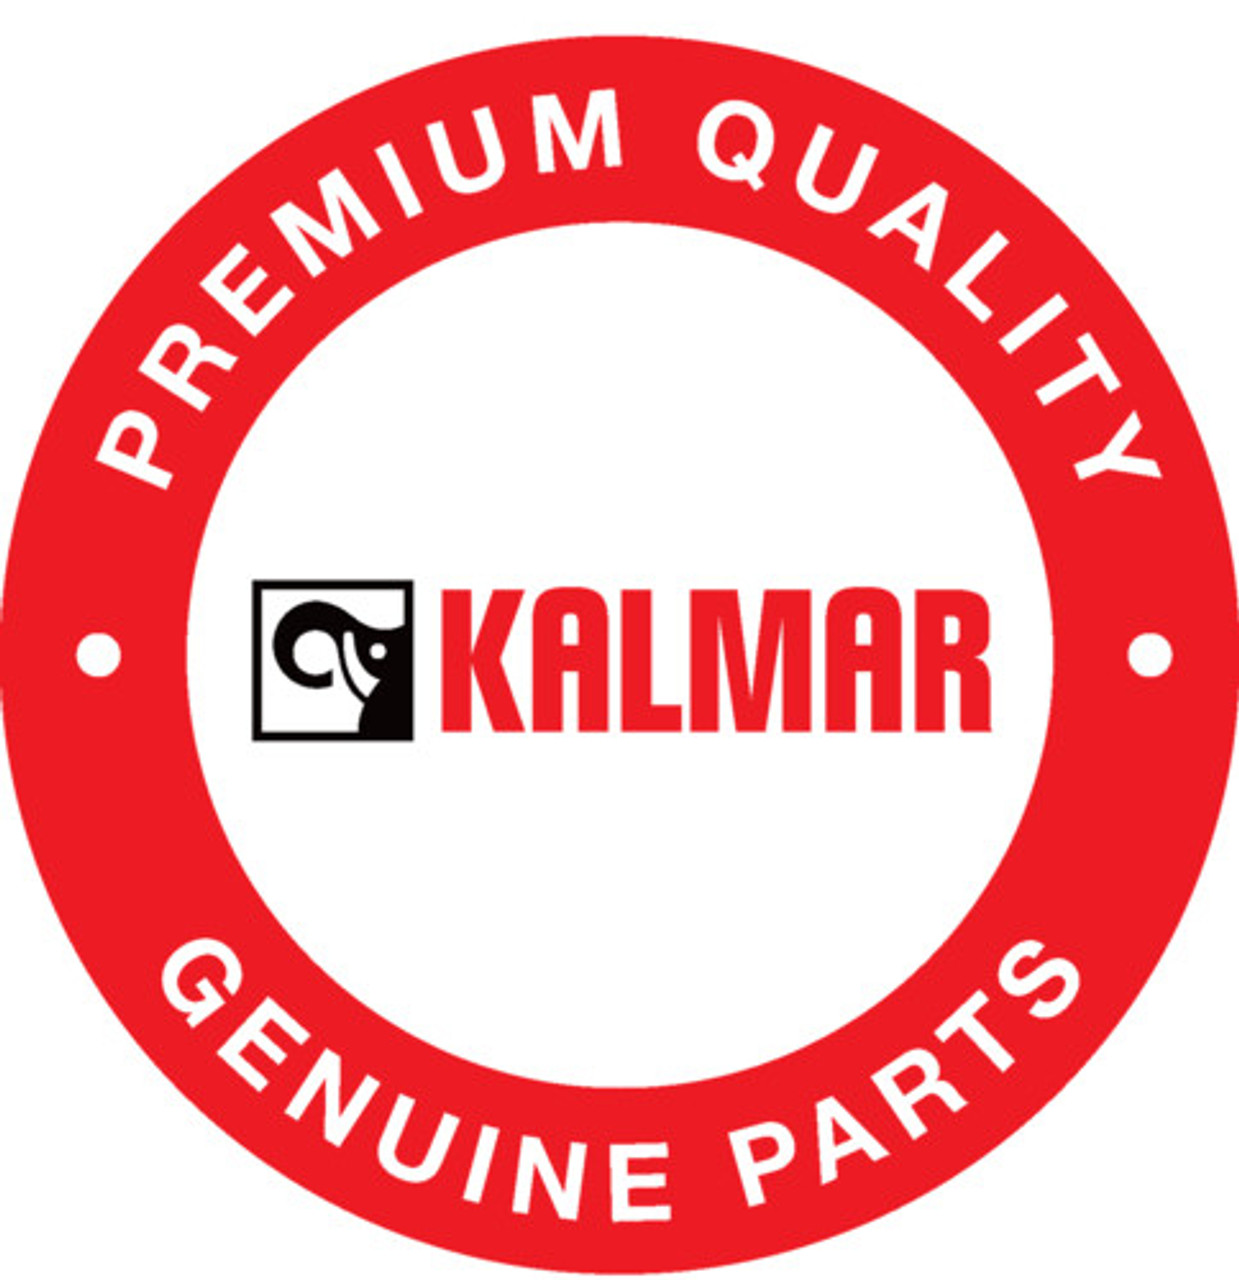 A02104.0100: Kalmar® Clamp